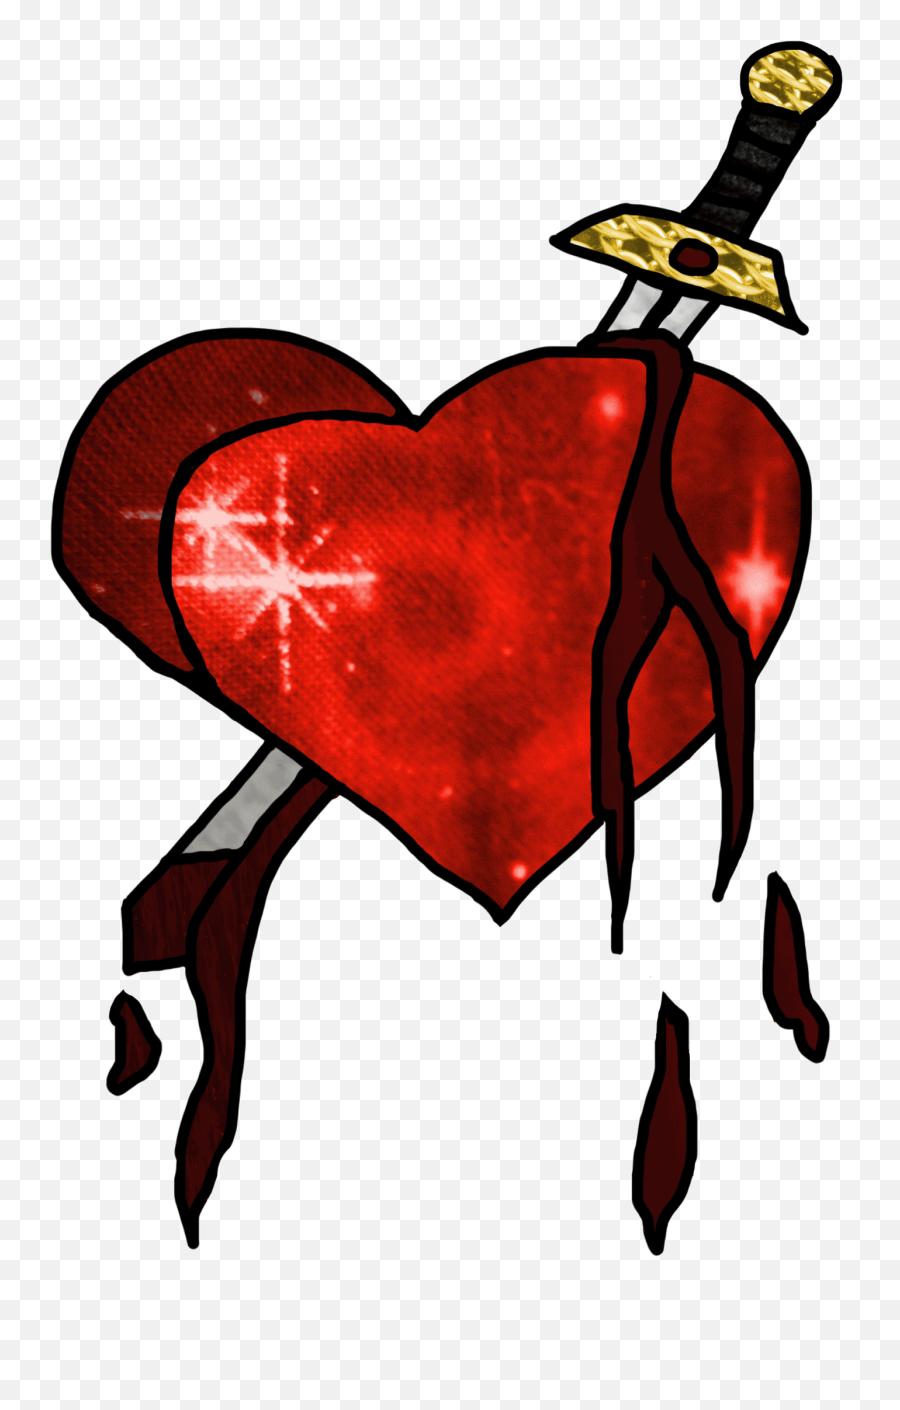 Bleeding Heart - Illustration Png,Bleeding Heart Png